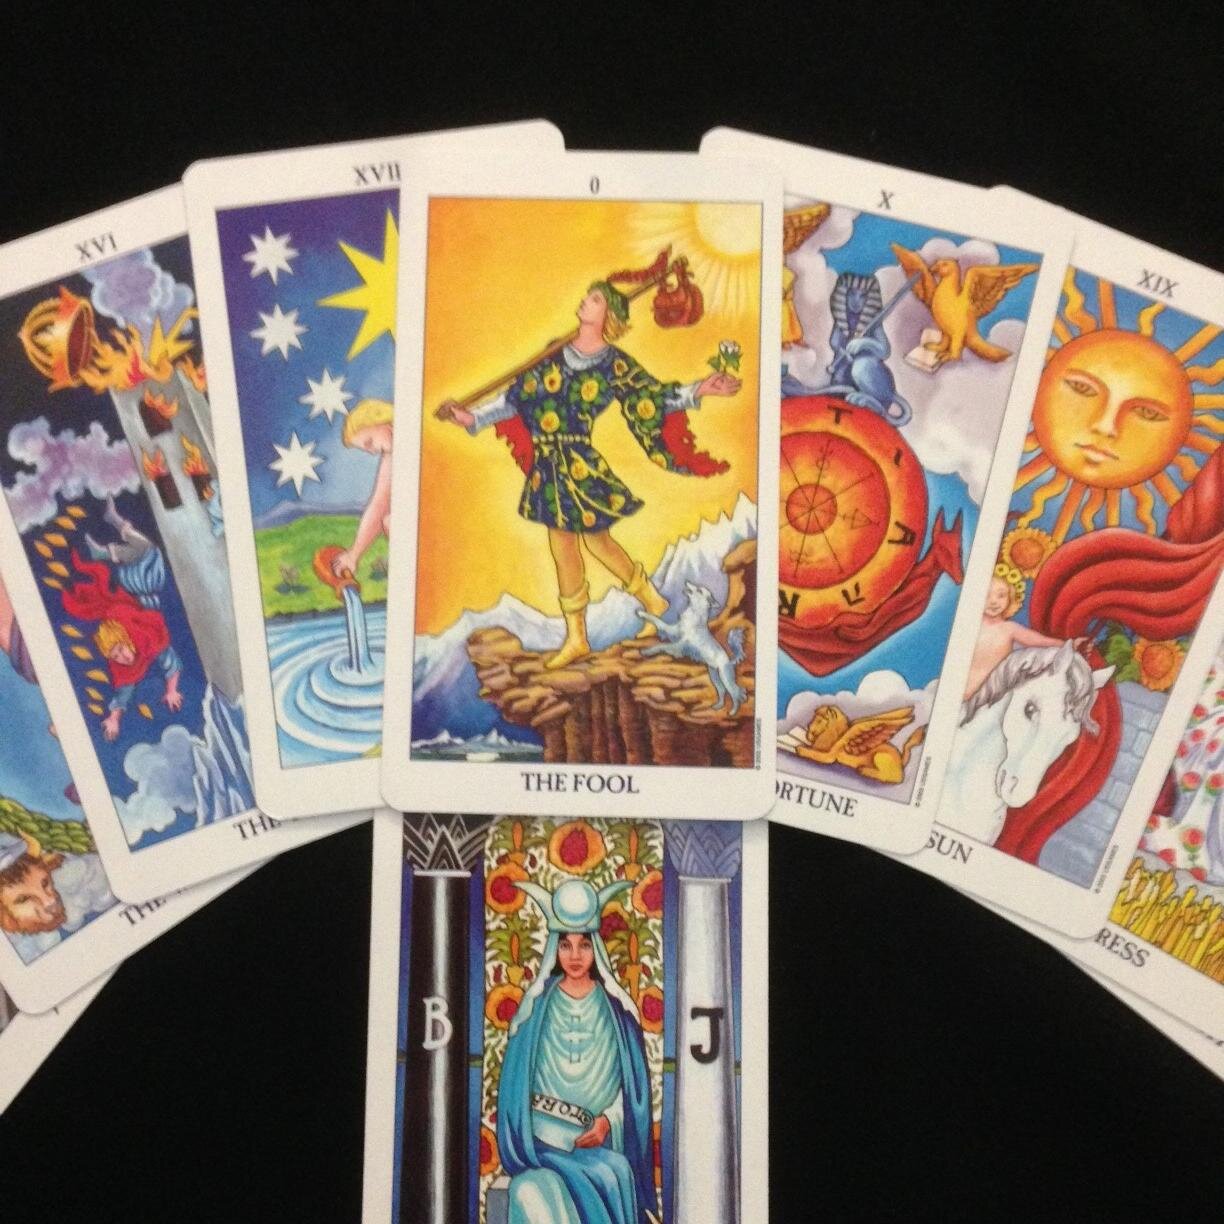 Finding inner peace & guidance through Tarot